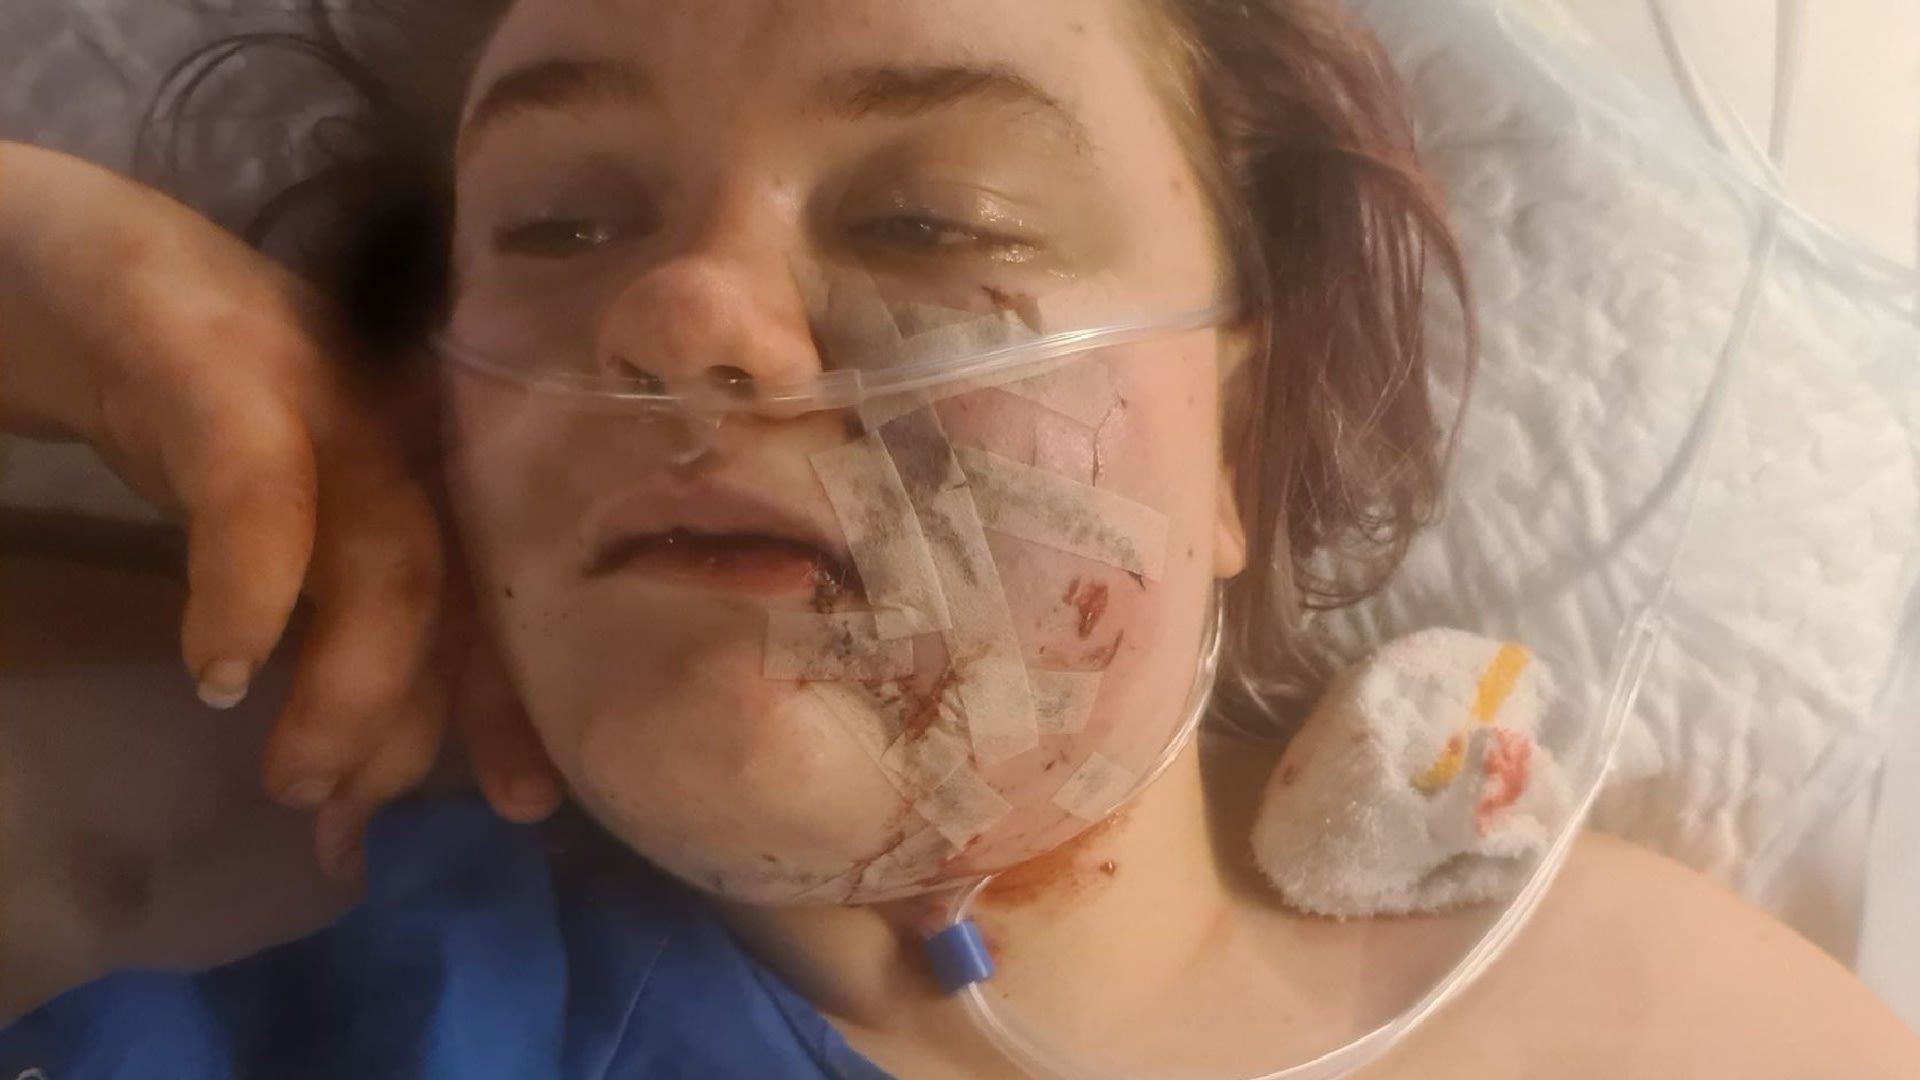 Agressieve pitbull die gezicht van Julia (18) aan flarden scheurde doodgeschoten door politie